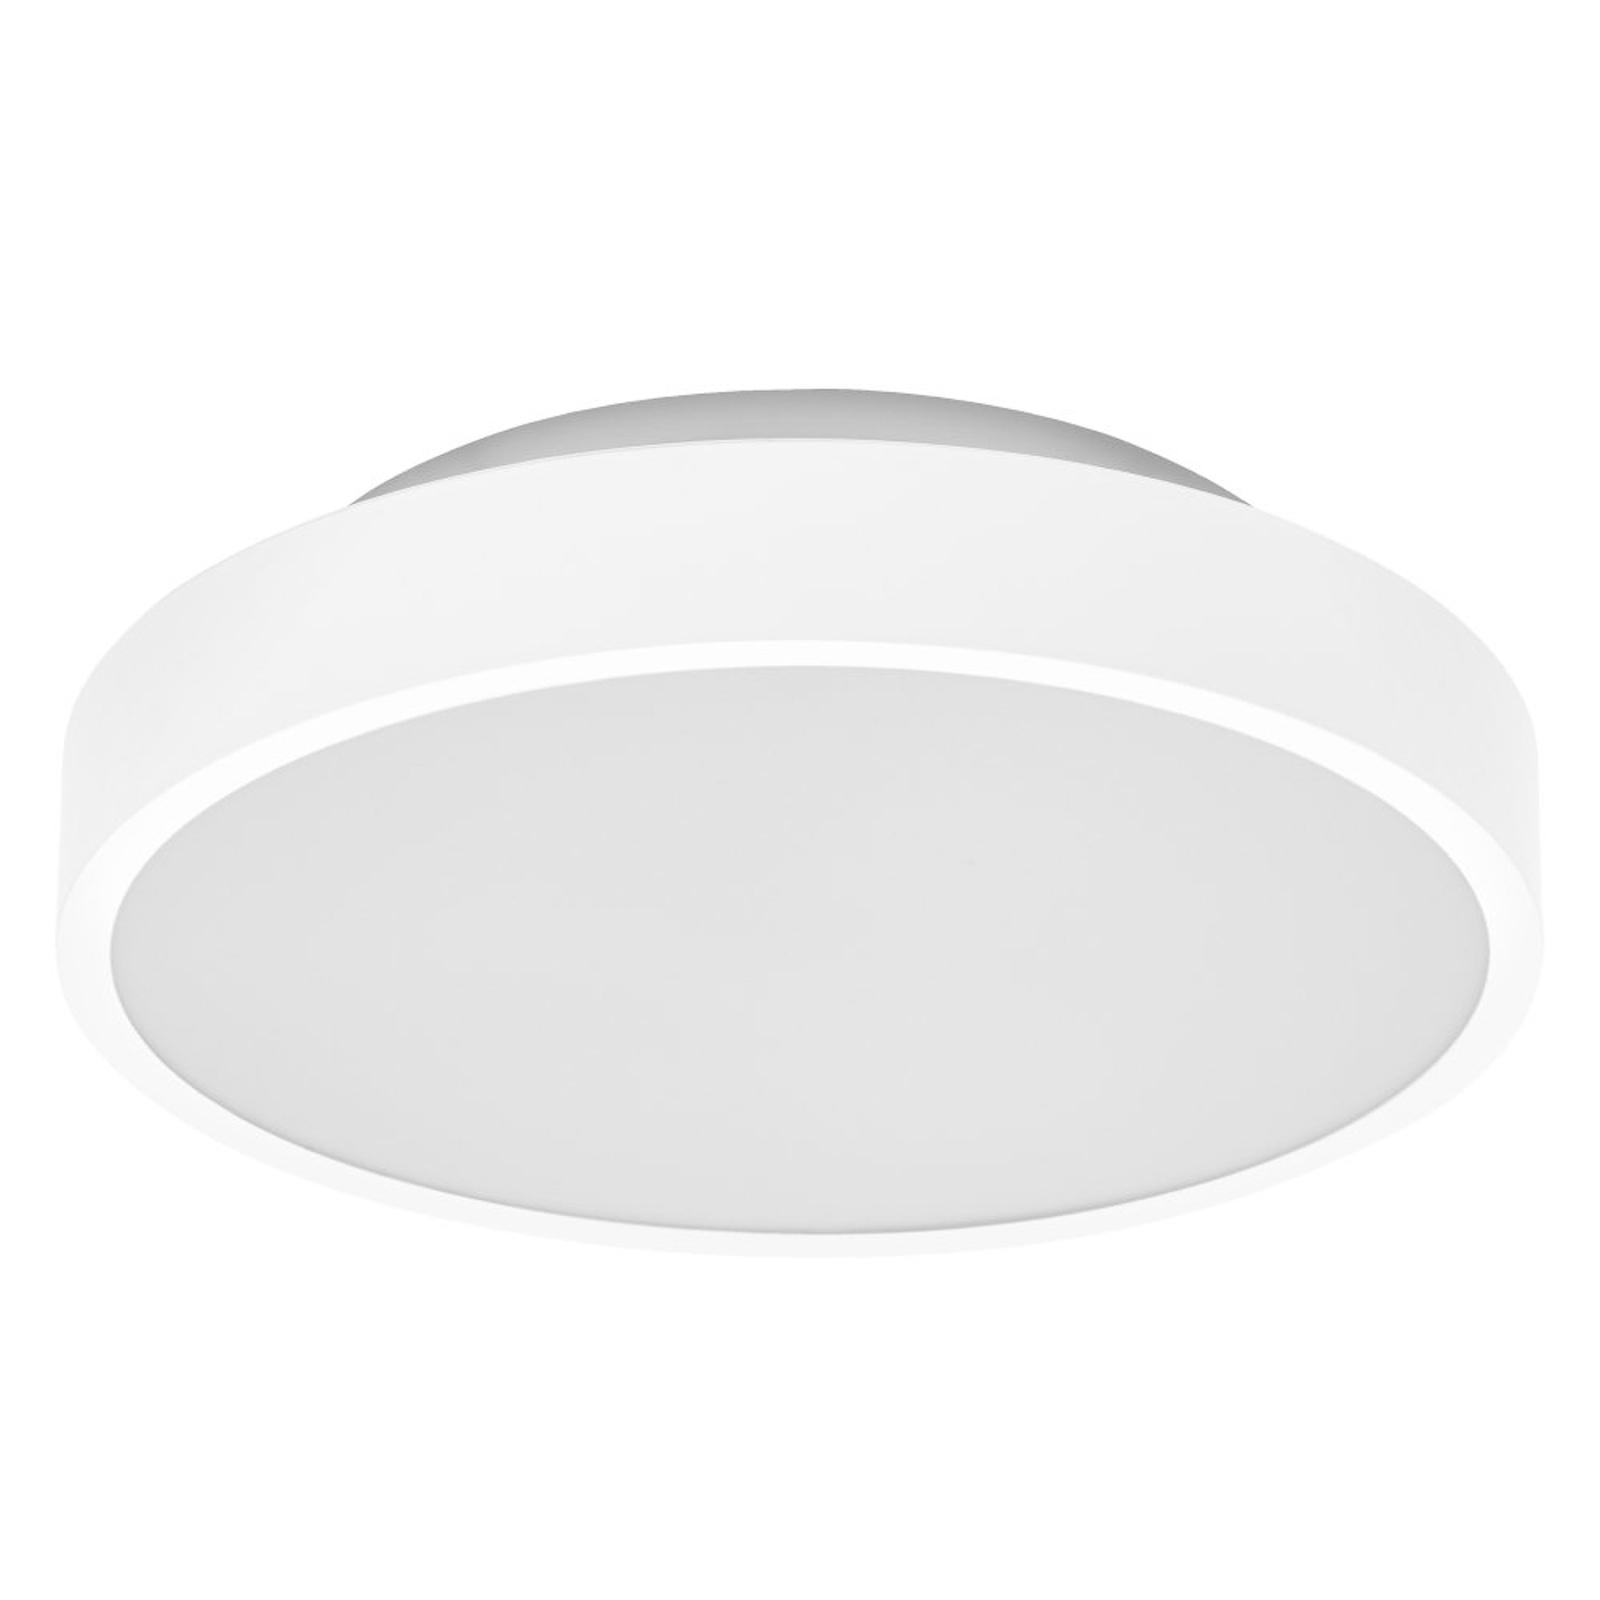 LEDVANCE SMART+ WiFi Orbis Backlight alb Ø 35 cm